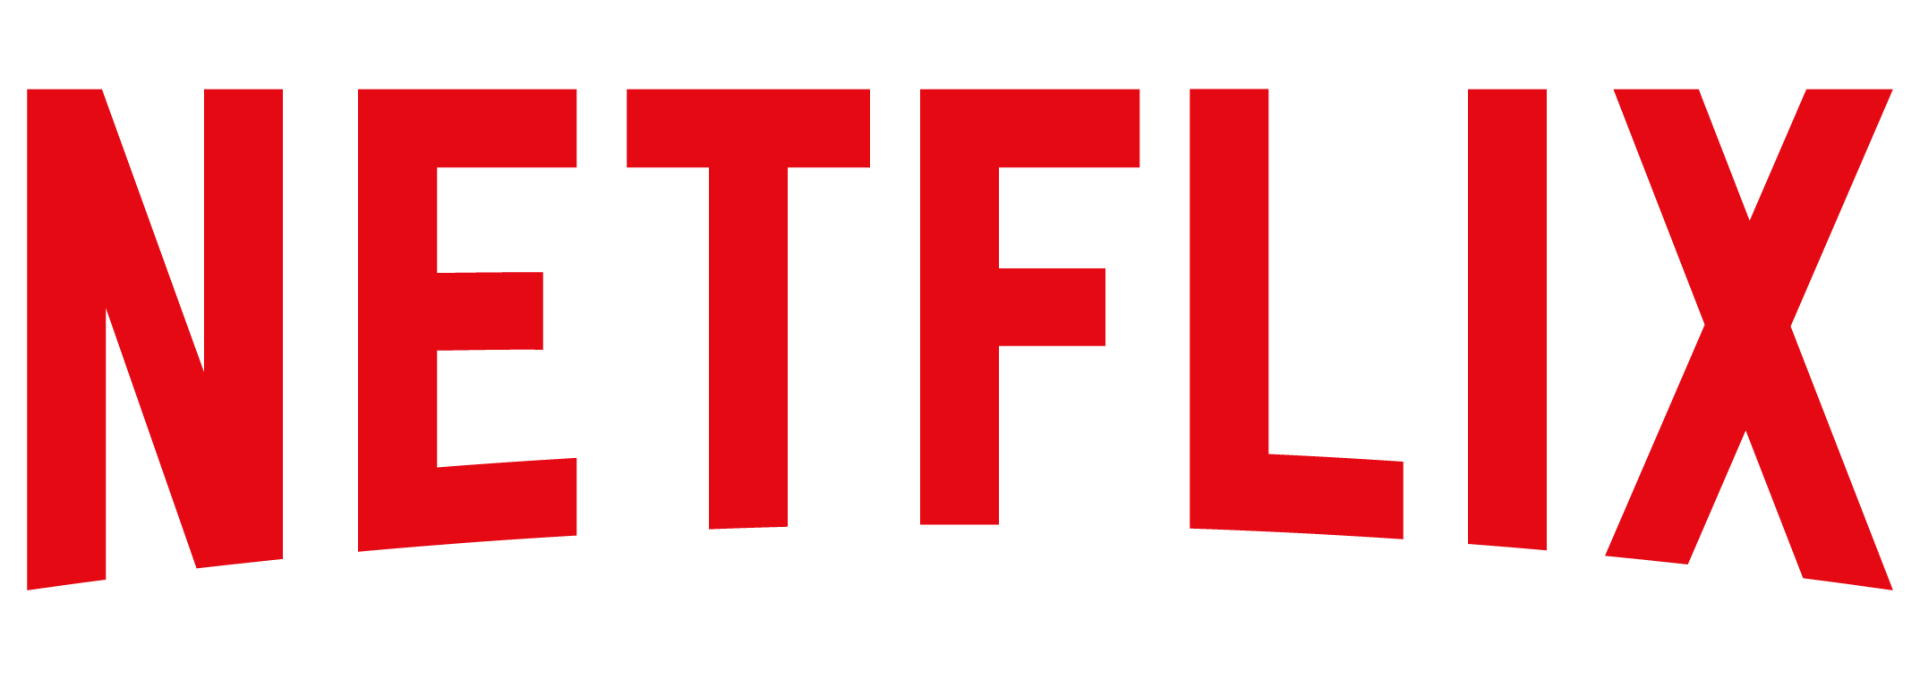 Netflixlogo